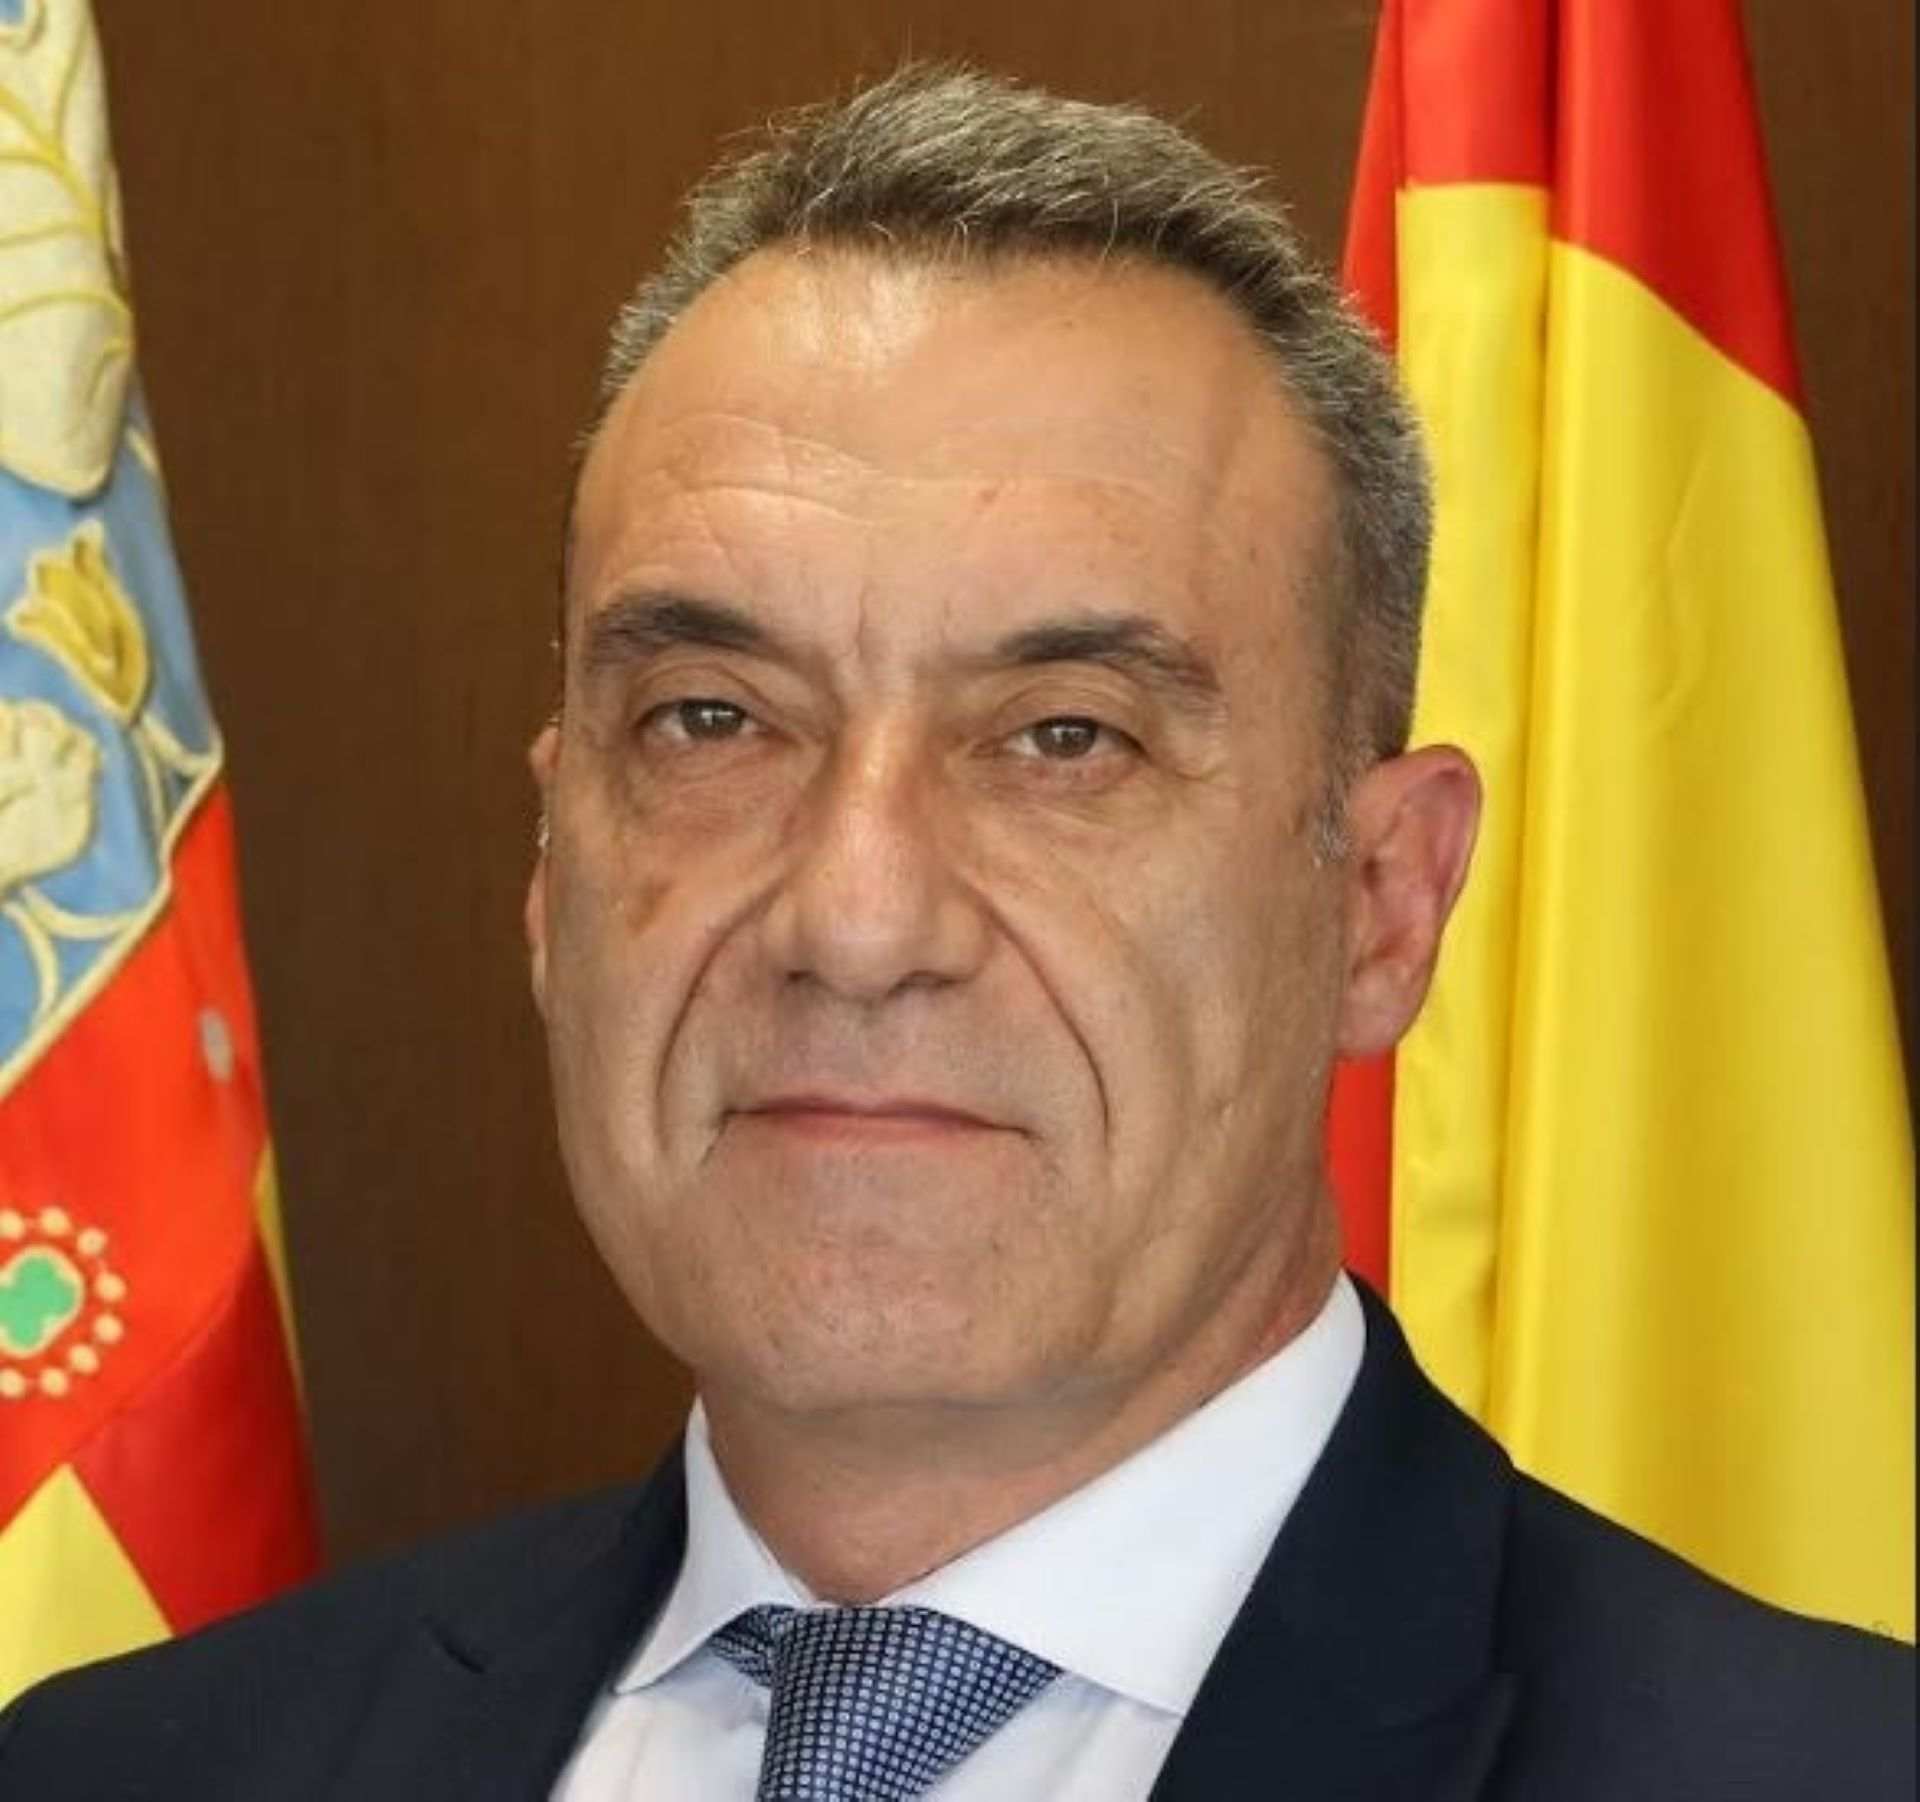 El govern valencià fa cessar el subsecretari de Justícia (Vox), condemnat per violència masclista